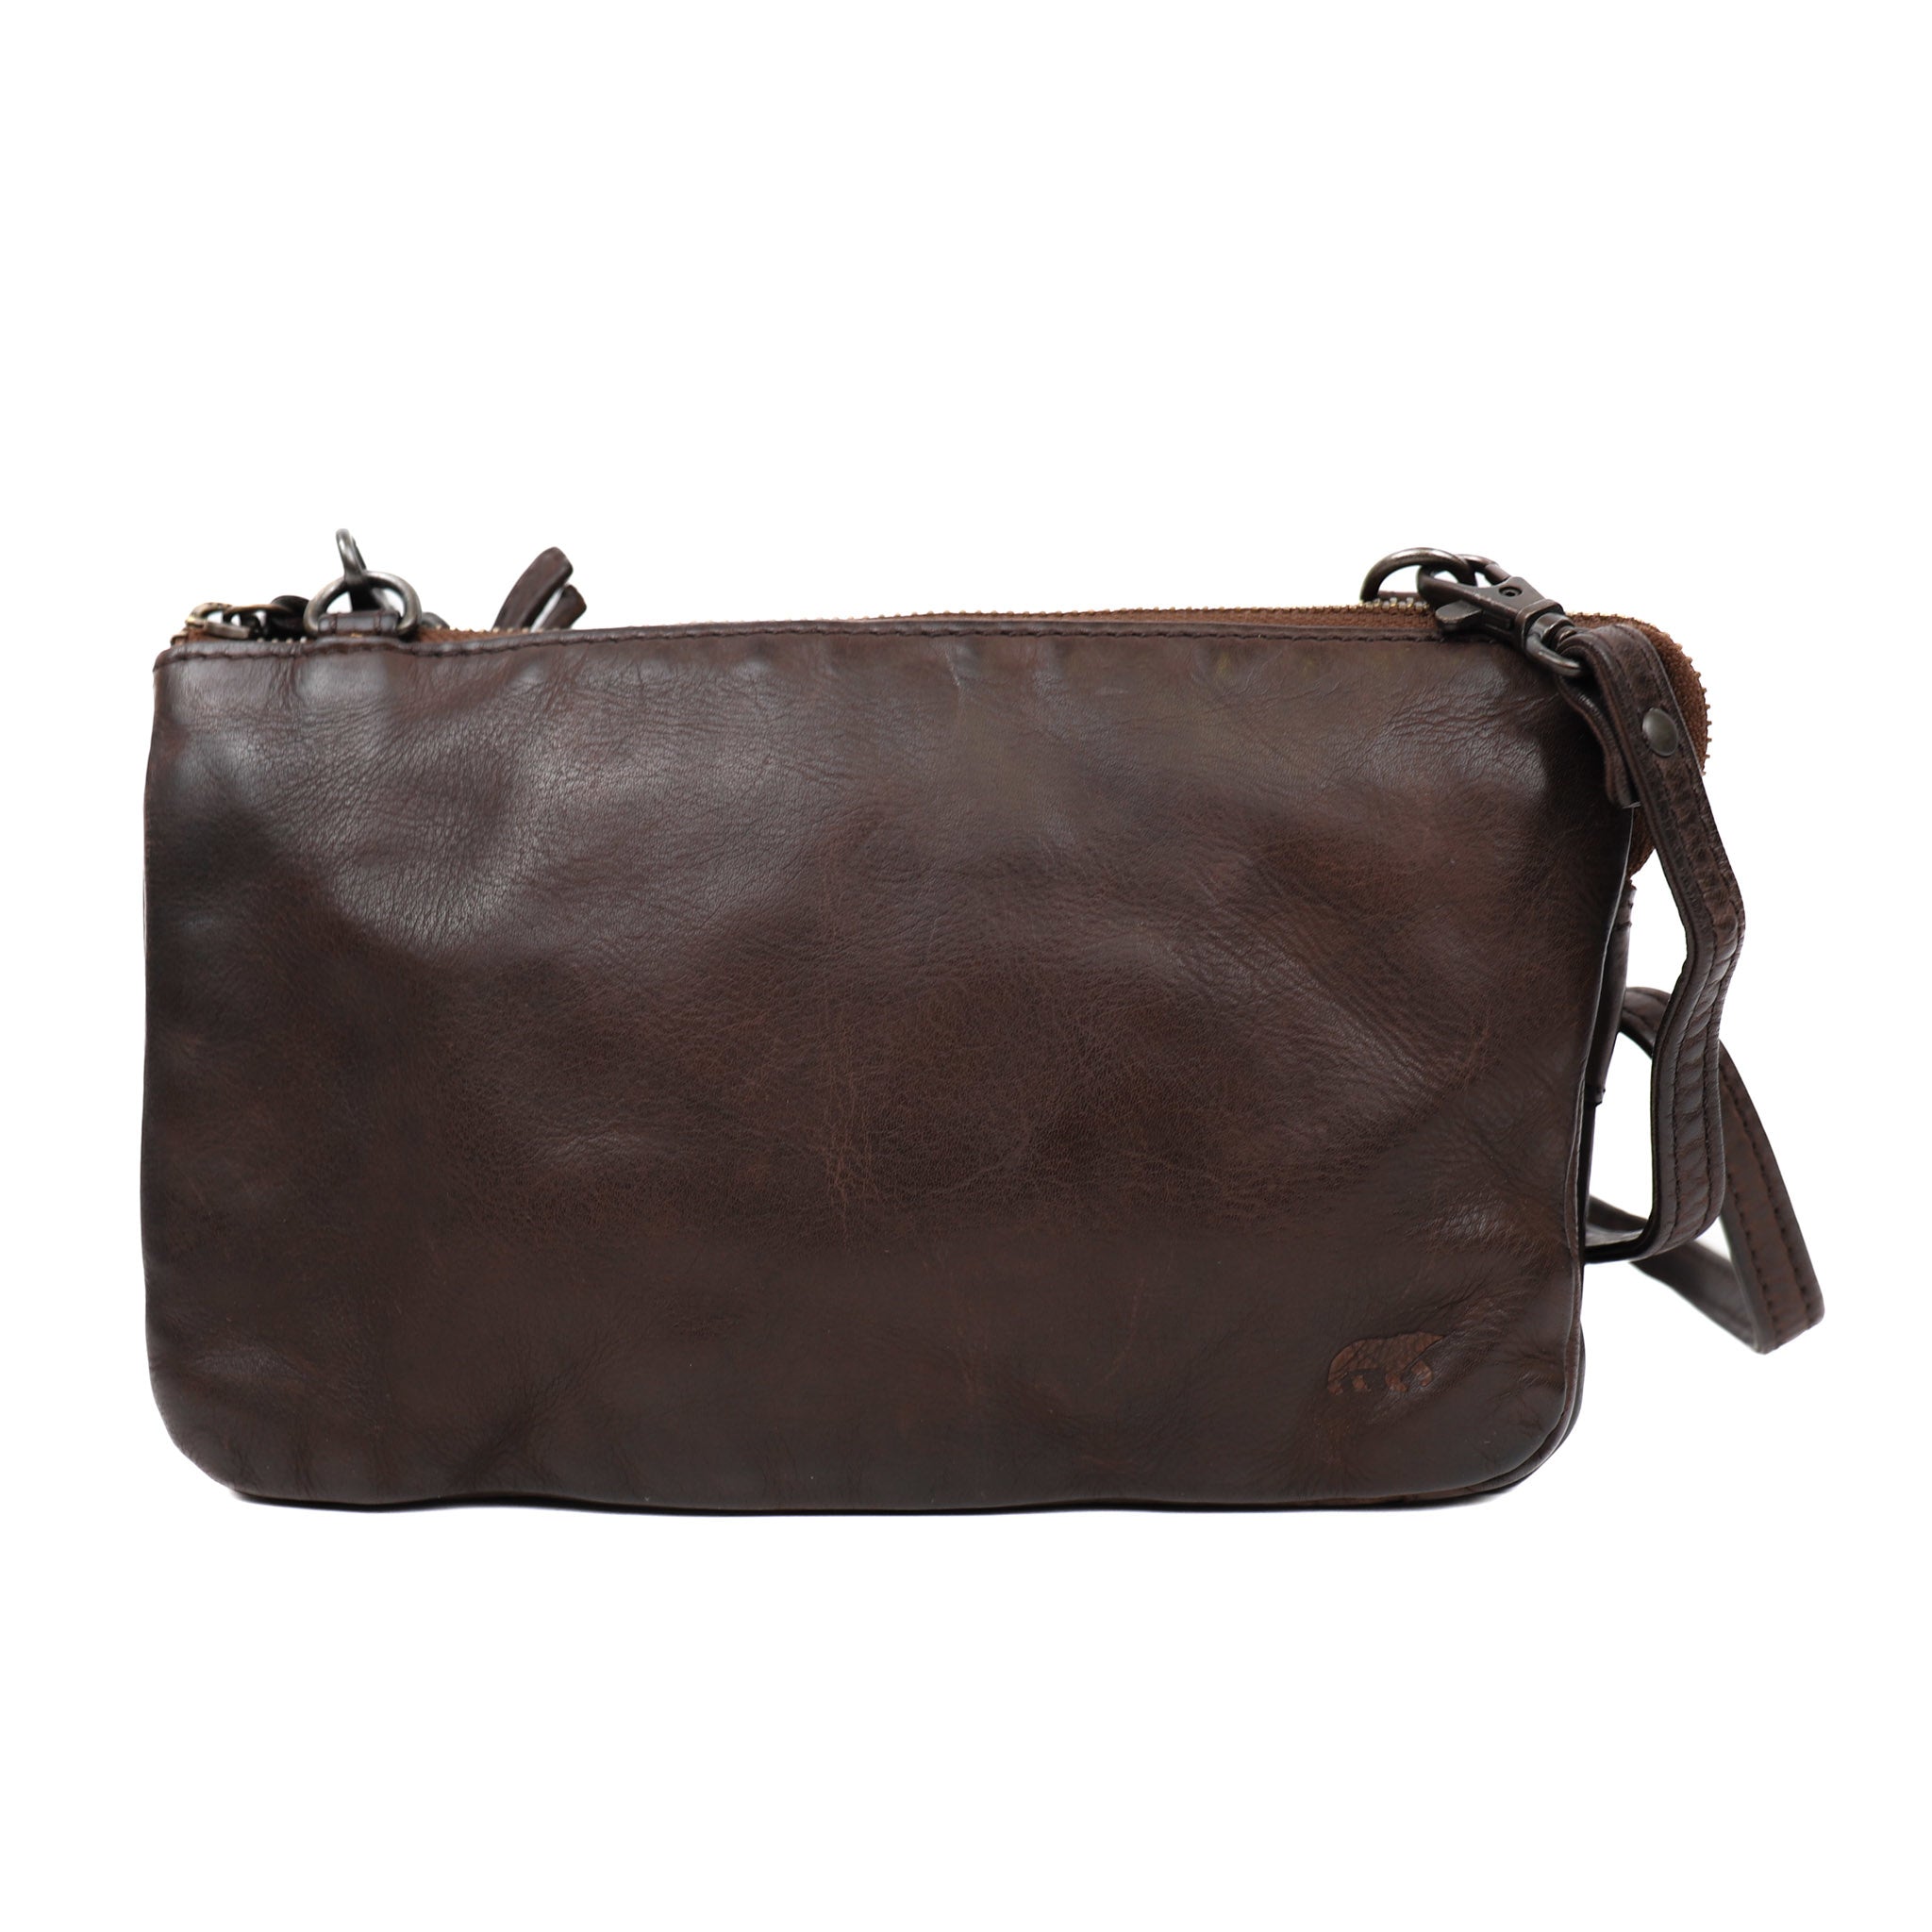 Purse bag 'Uma' dark brown - CL 30996